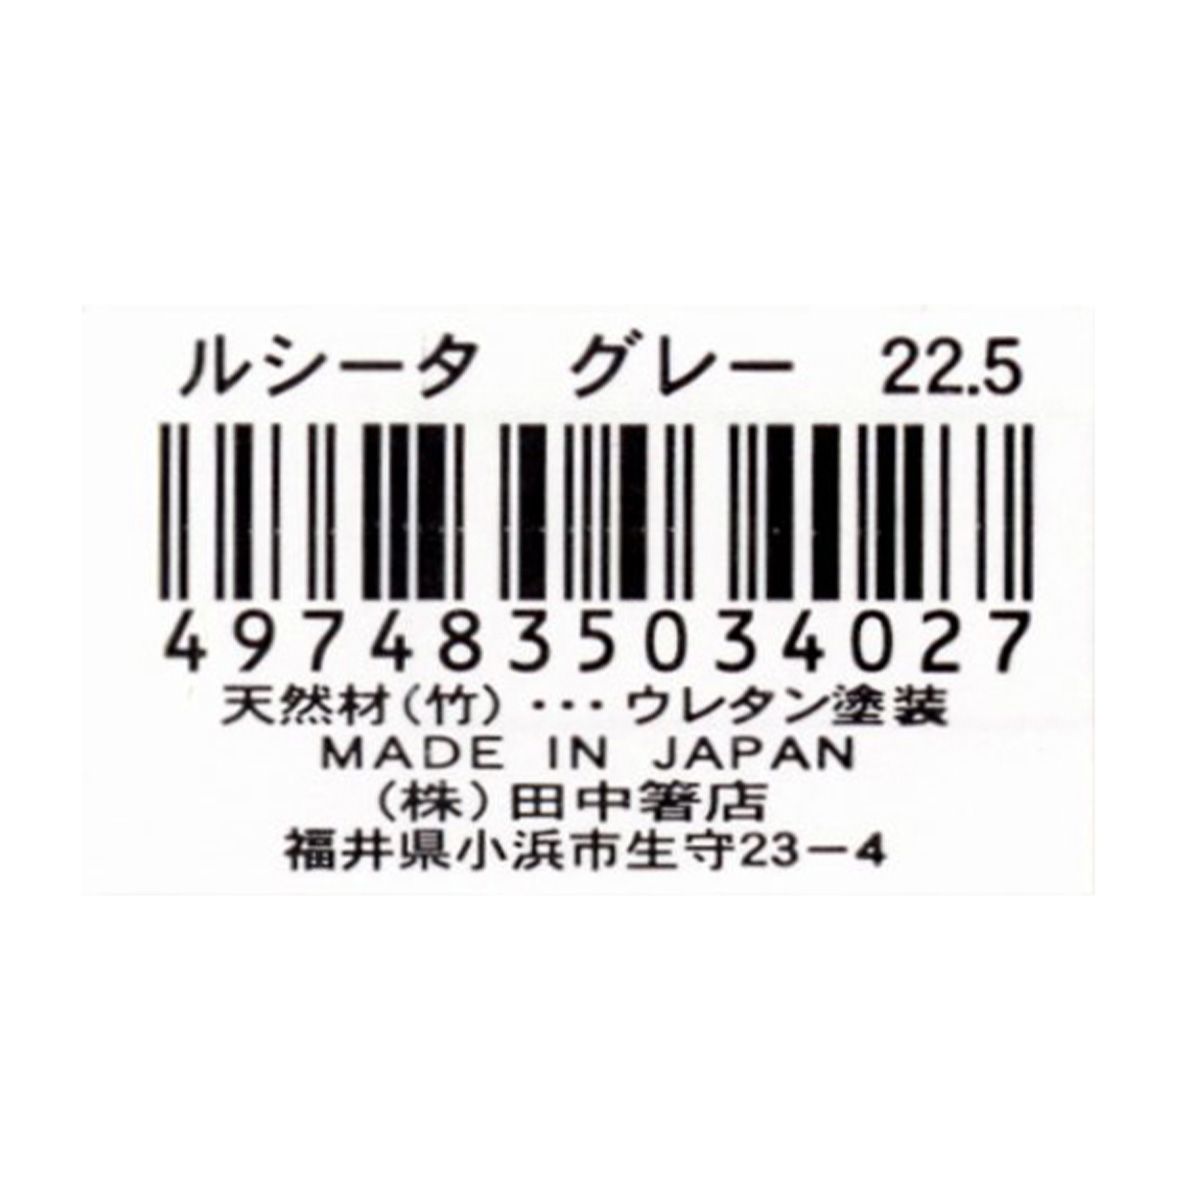 お箸 天然竹製 ルシータ箸 グレー 22.5cm 9001/345940